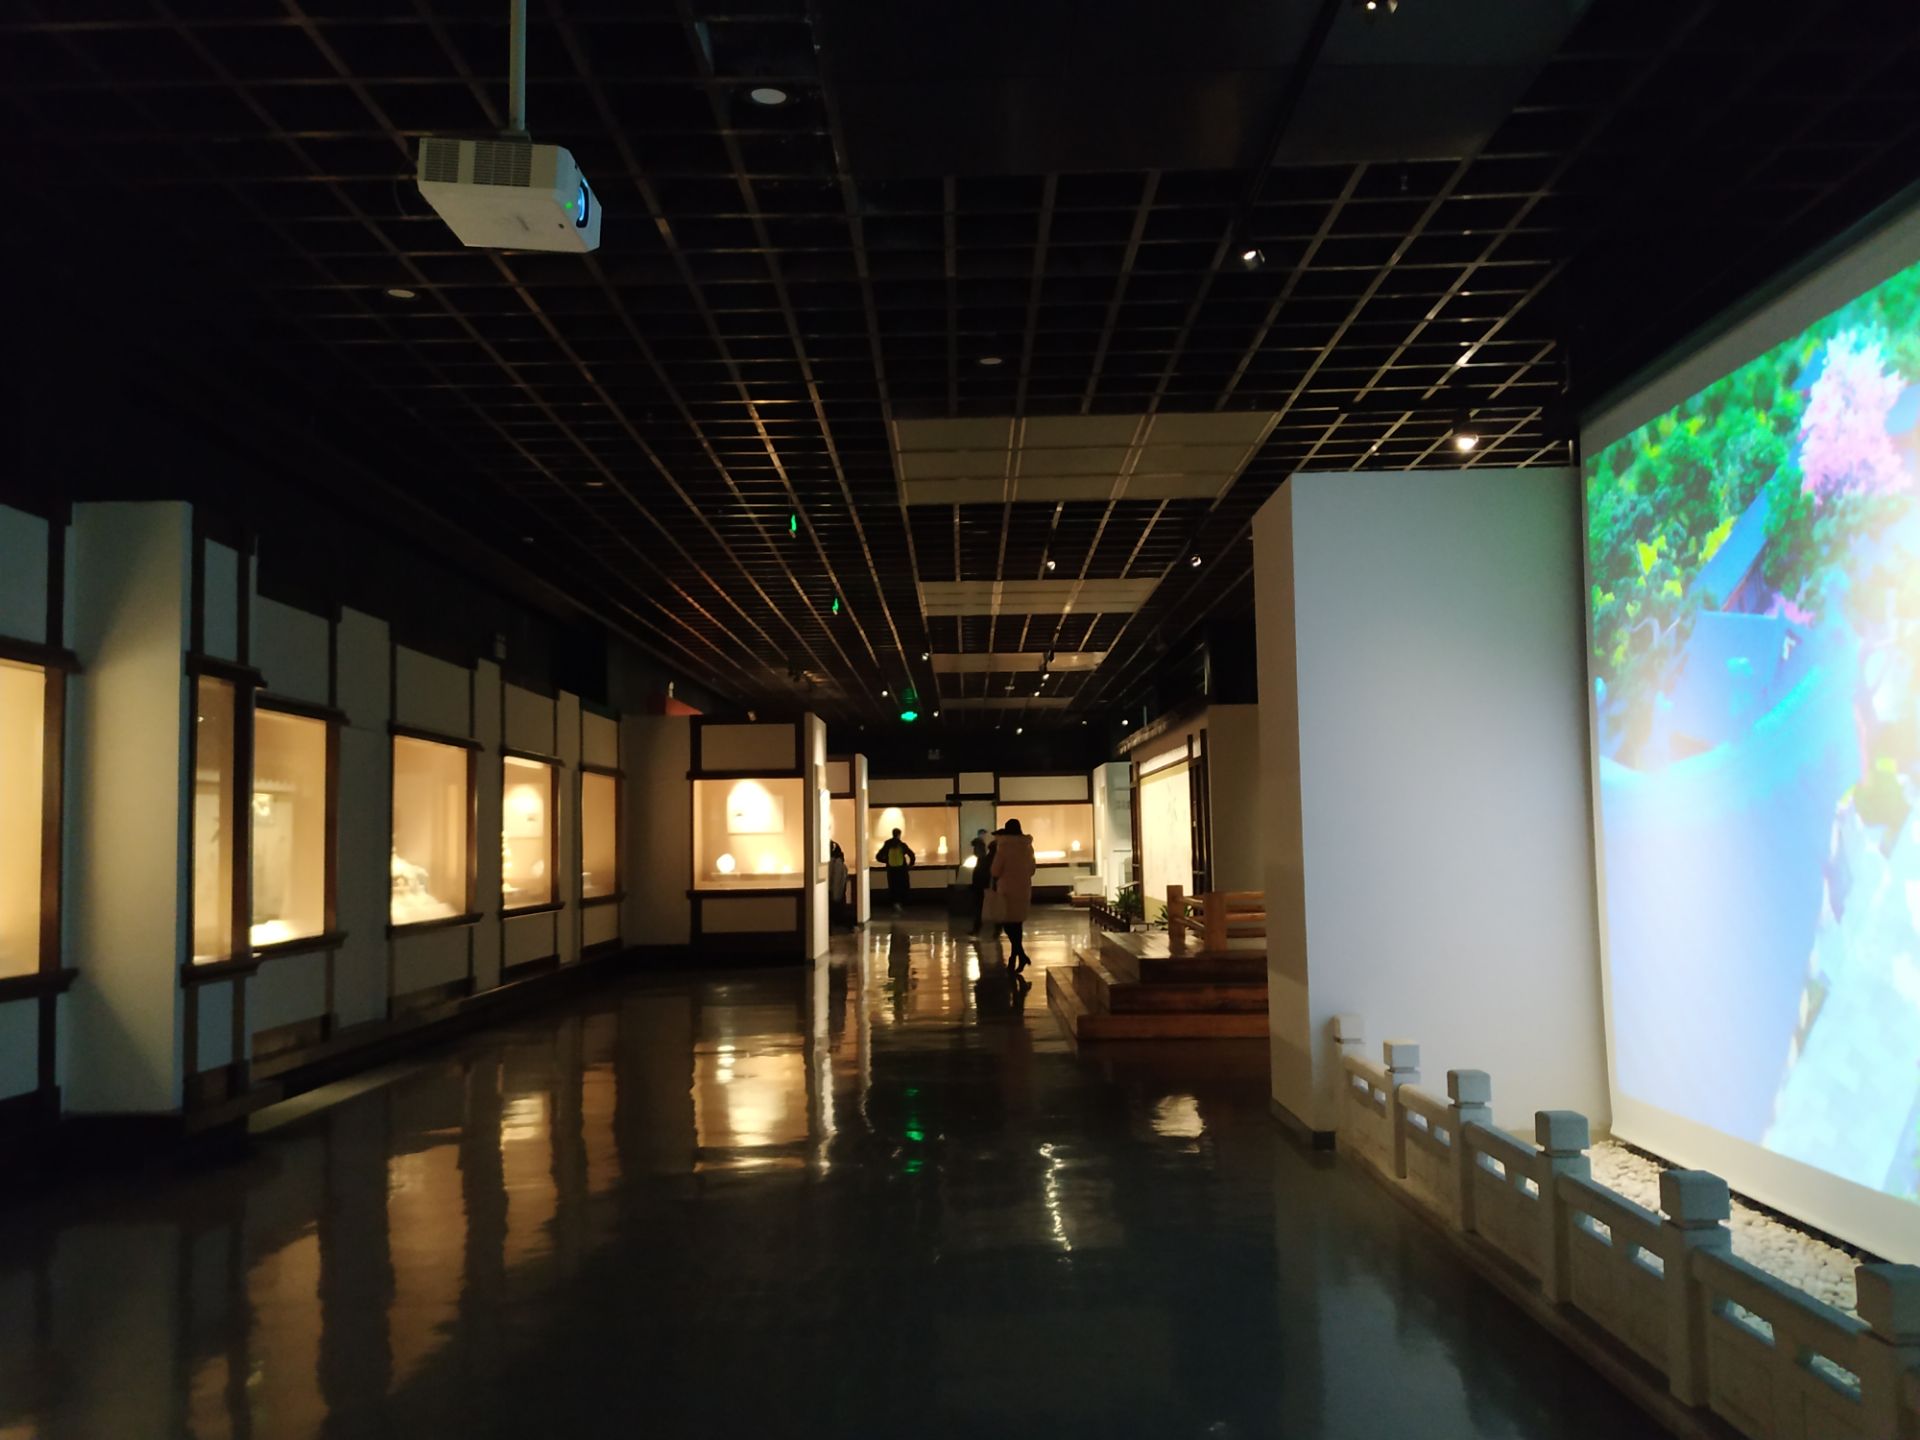 【携程攻略】武汉湖北省博物馆景点,湖北博物馆位于武汉东湖风景区内，是国家级博物馆之一，周一闭馆，免…